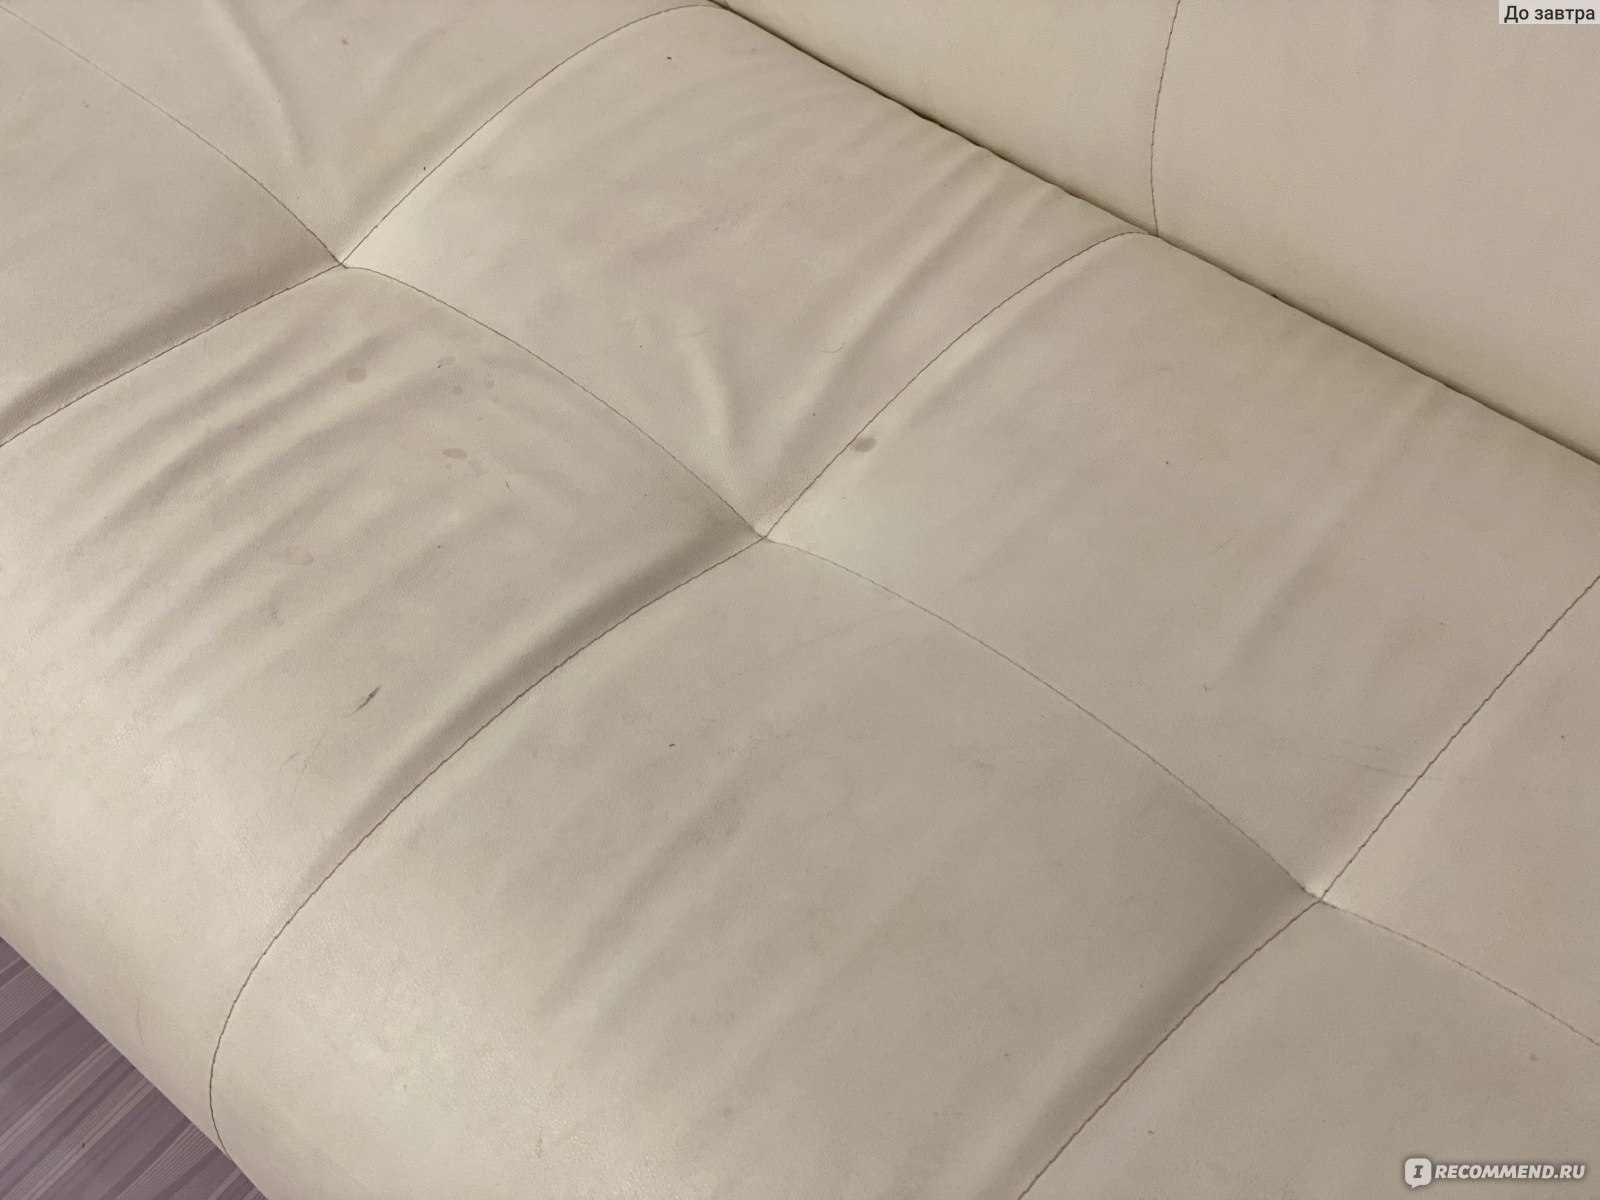 Кожаный диван разошелся по шву